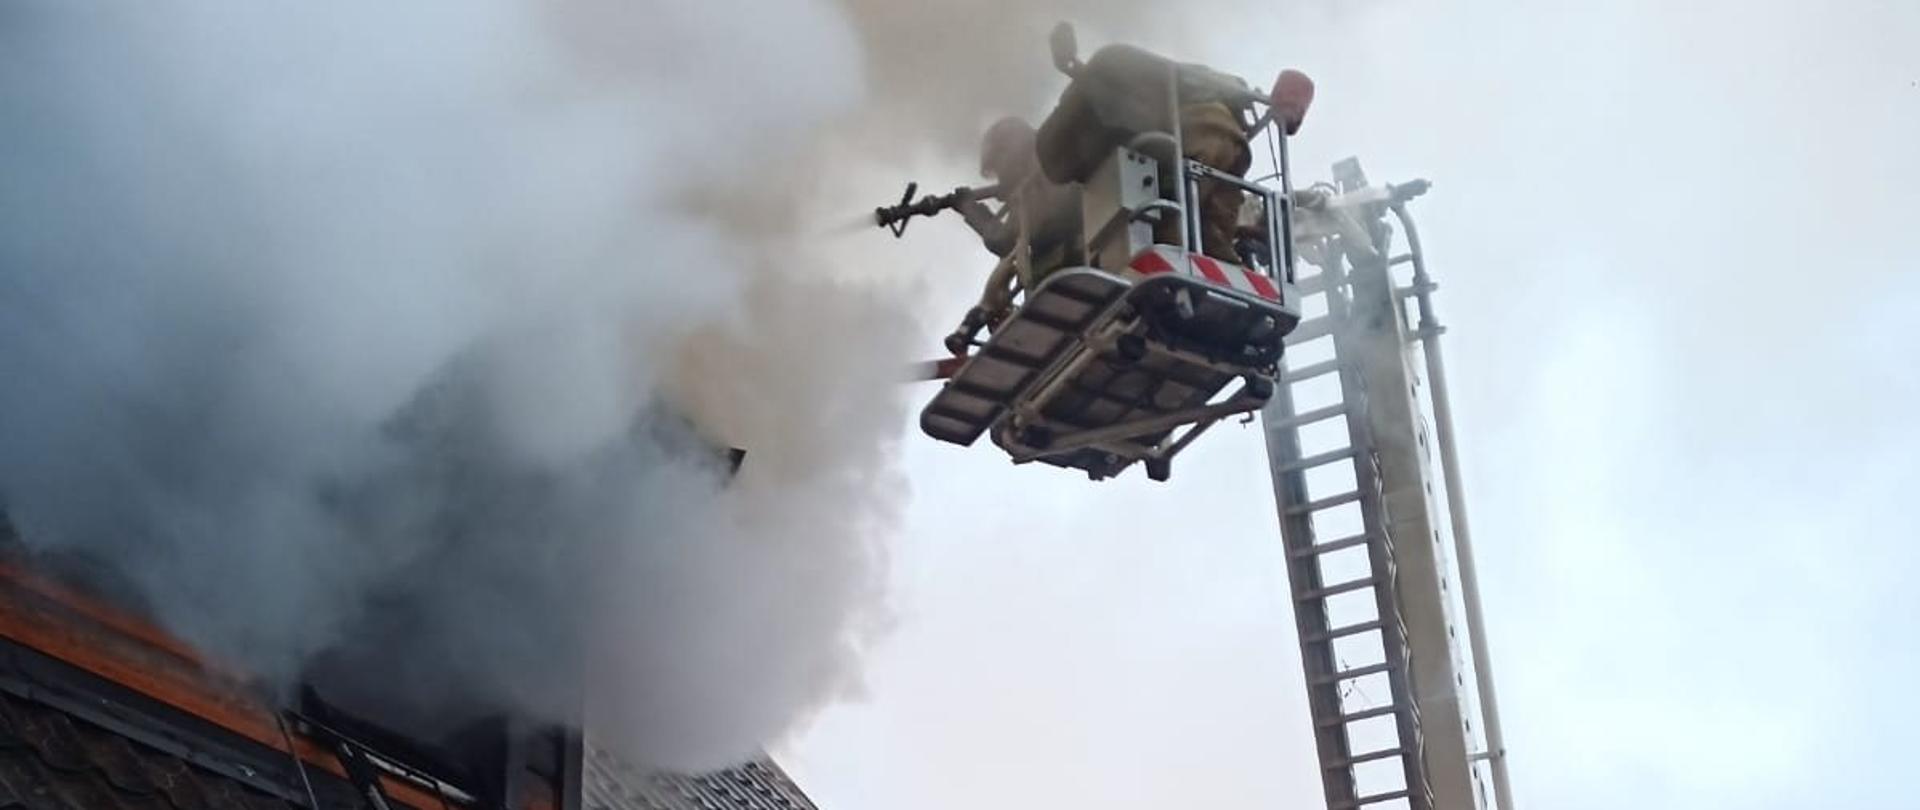 Strażak w koszu podnośnika gasi palący się dach budynku.